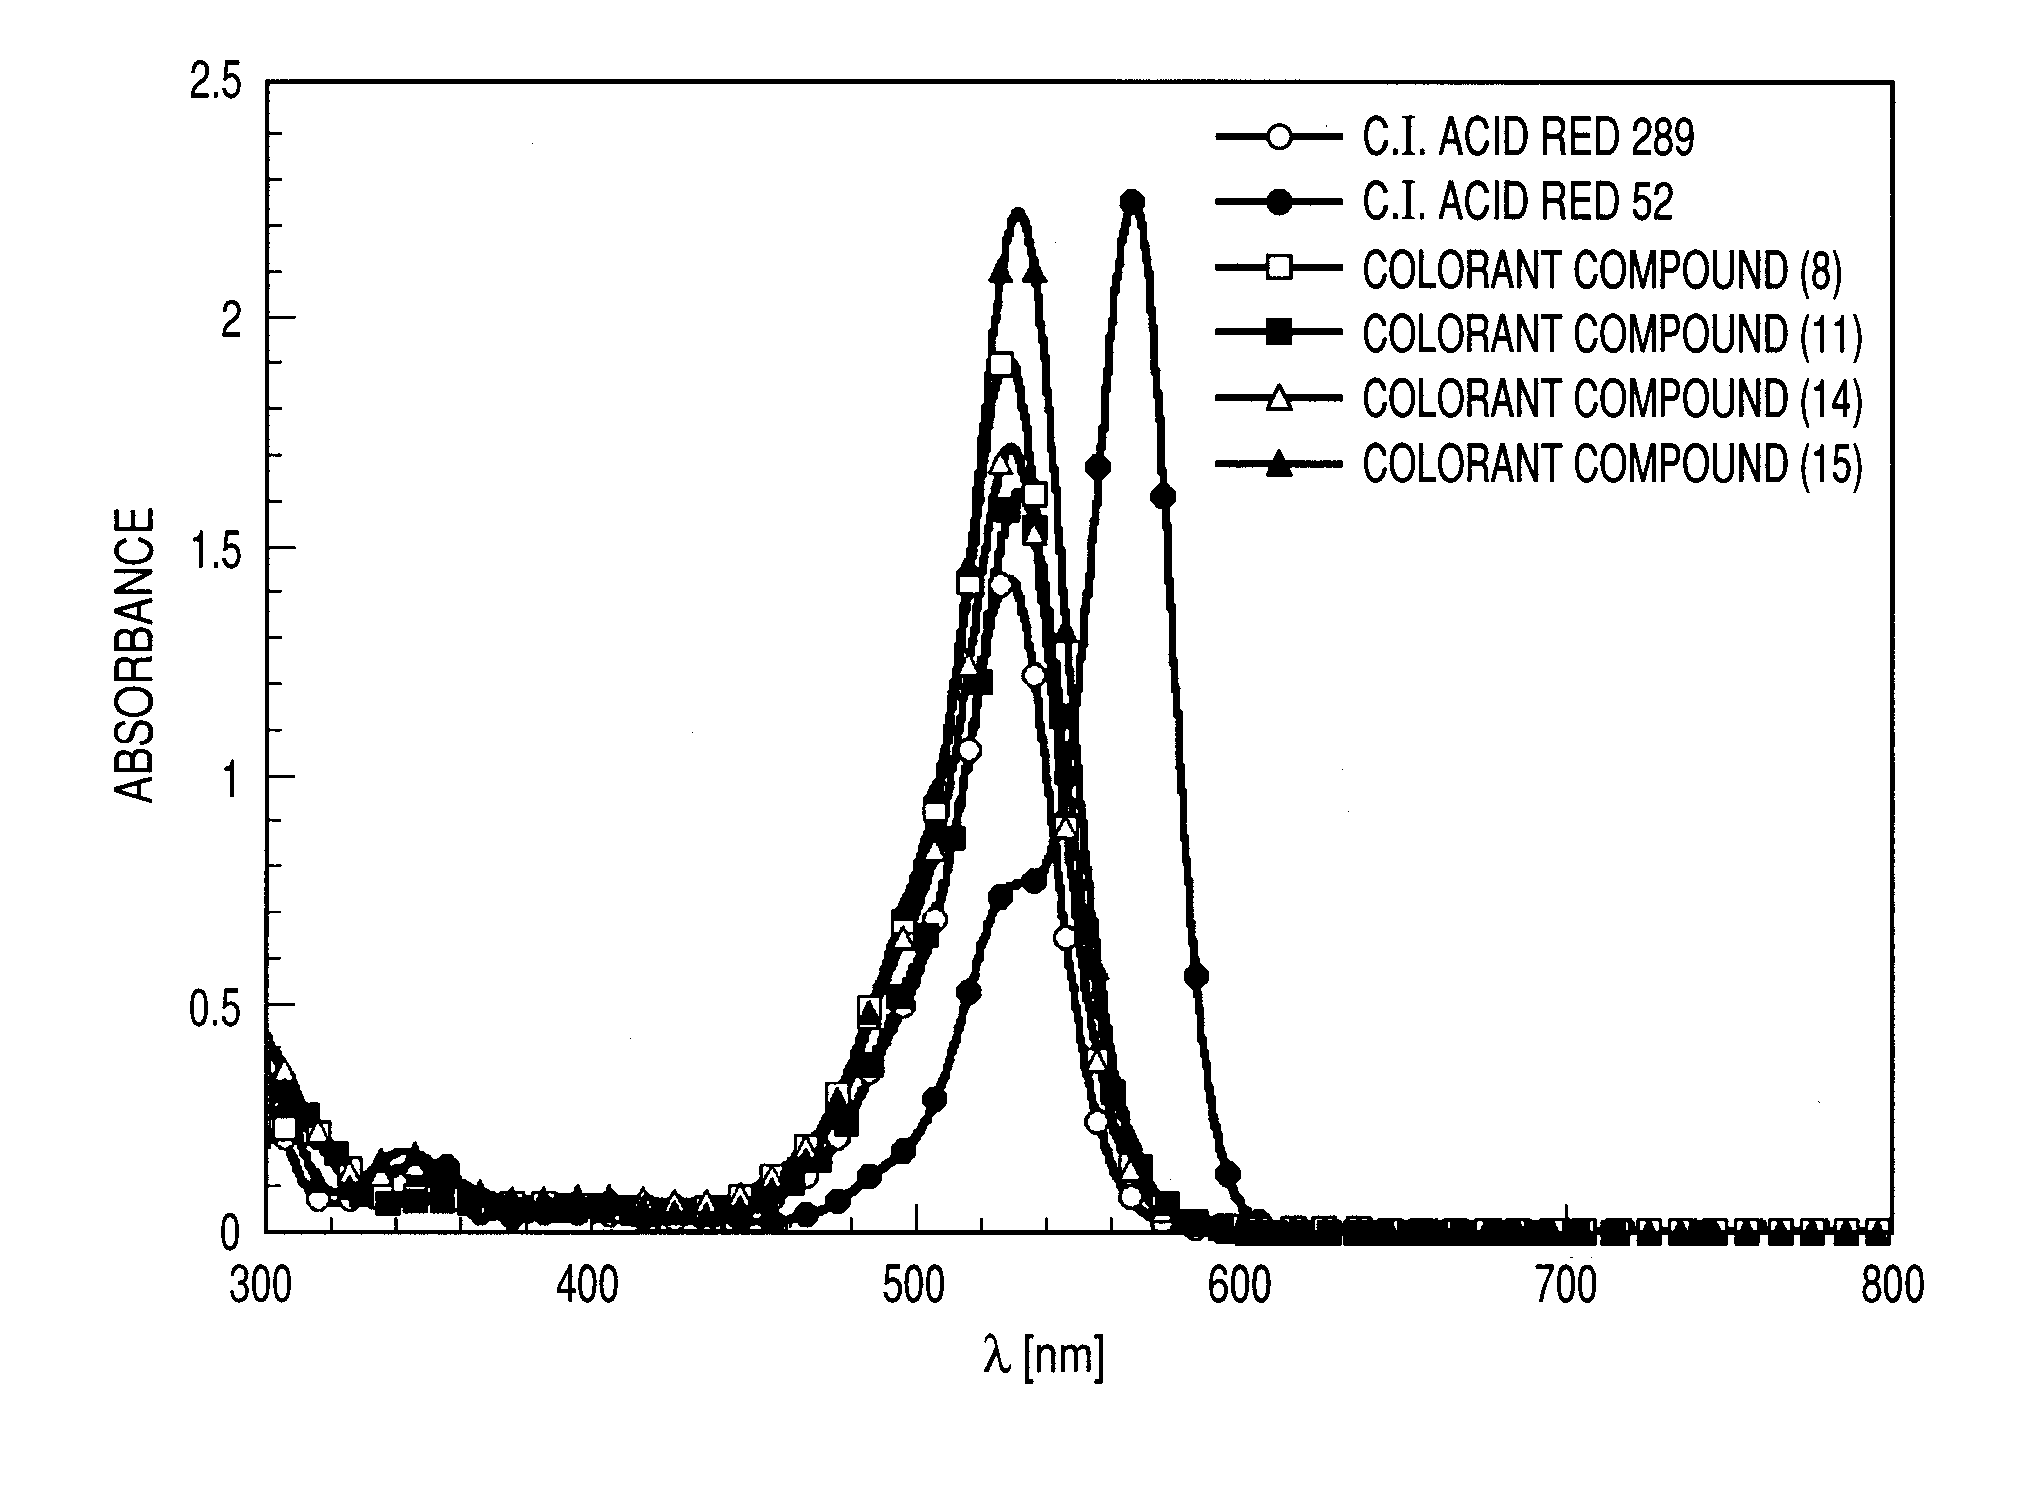 Colorant compound